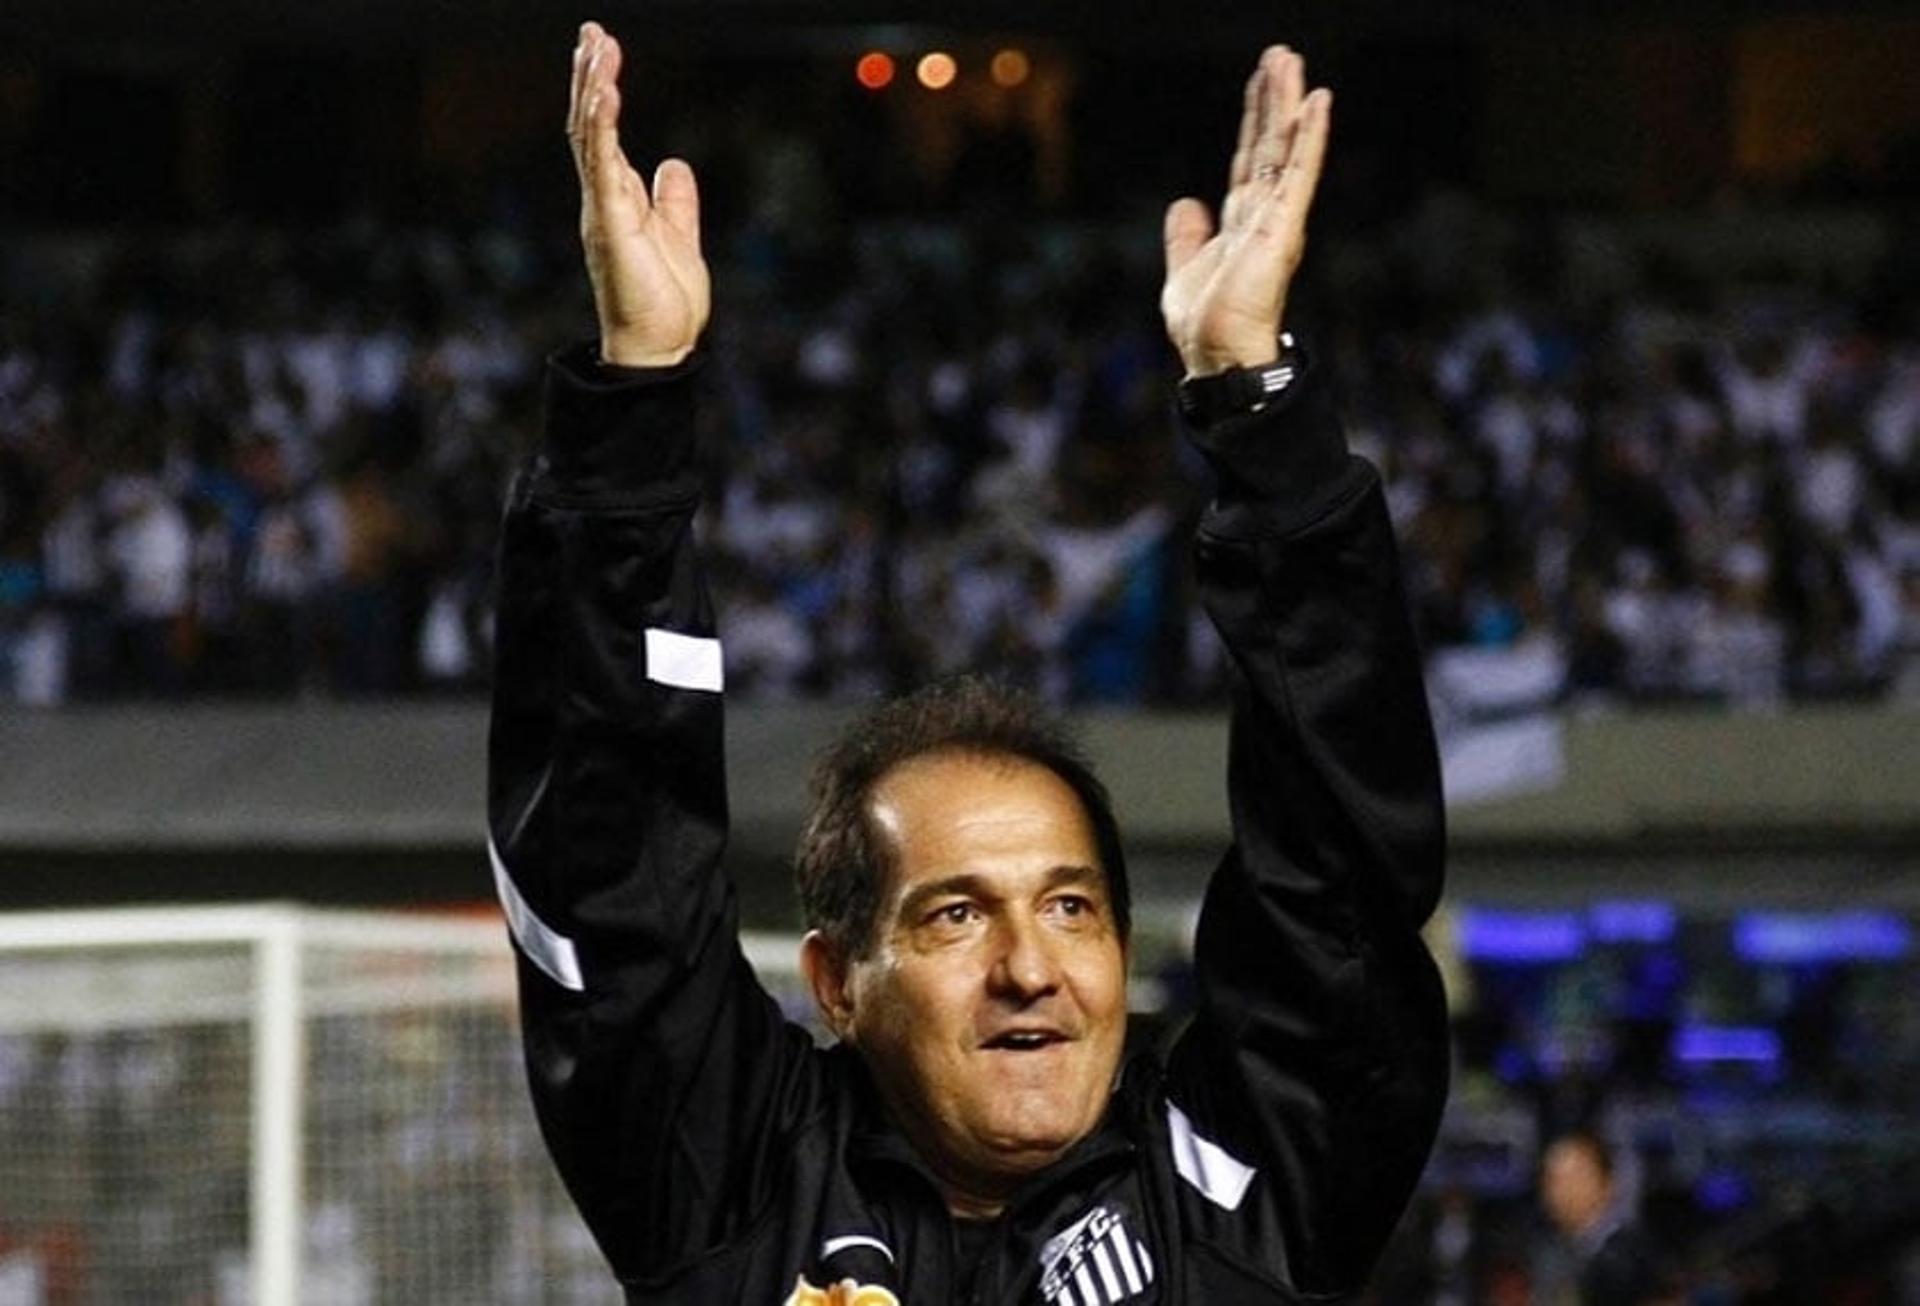 Muricy Ramalho - comandando o Santos no título do Paulista de 2011